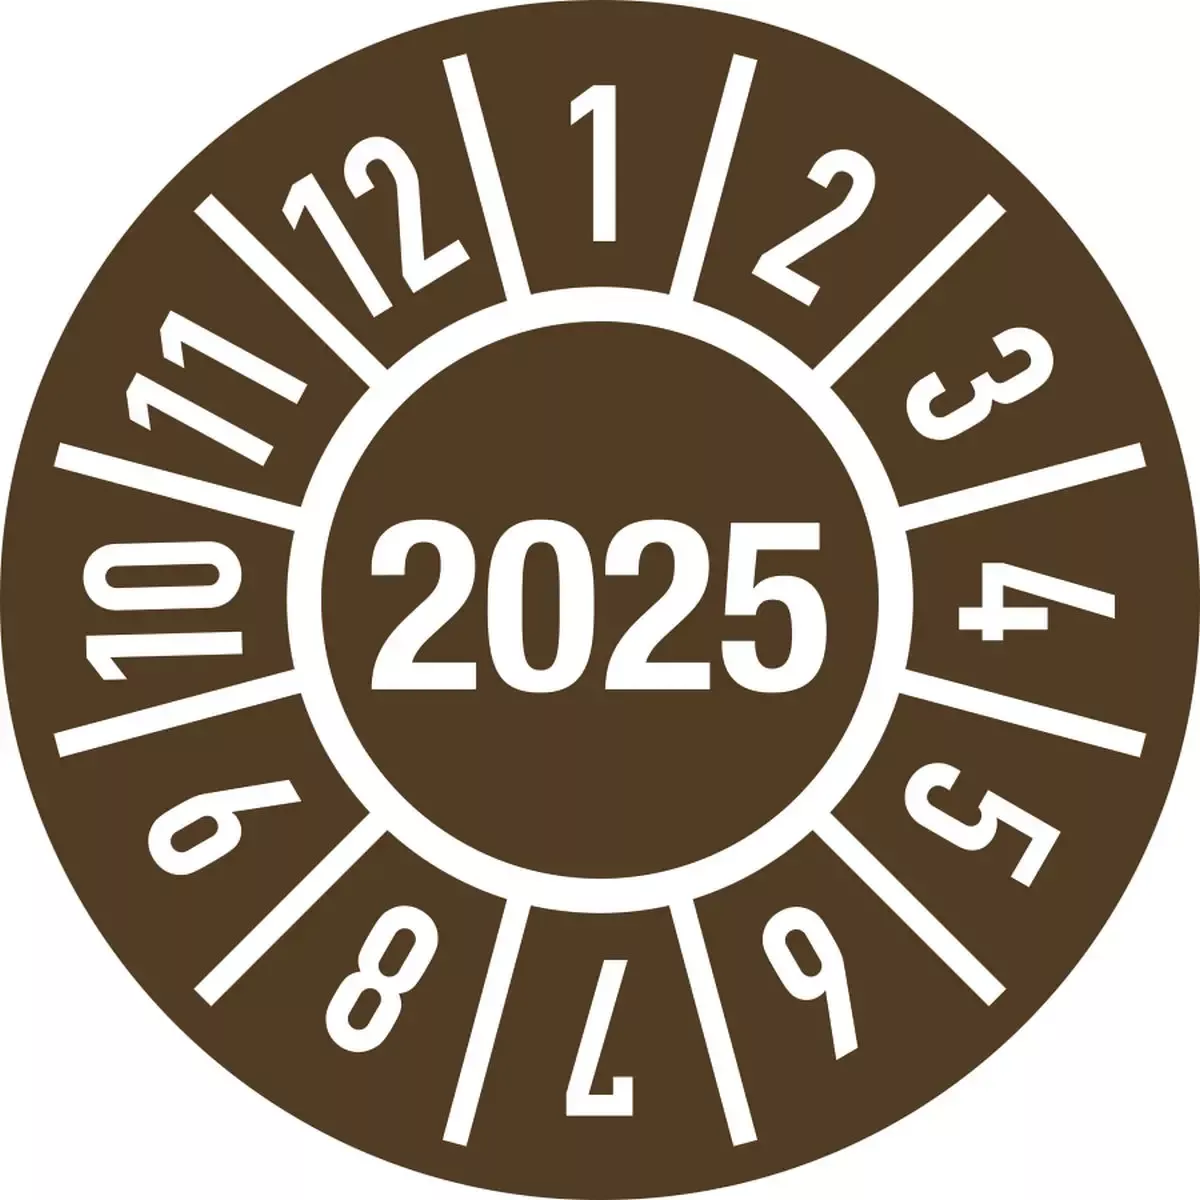 Hinweisschilder Prüfplakette Jahr 2025 mit Monaten, Folie, Ø 15 mm, 10 Stück Bogen für Warnen und hinweisen